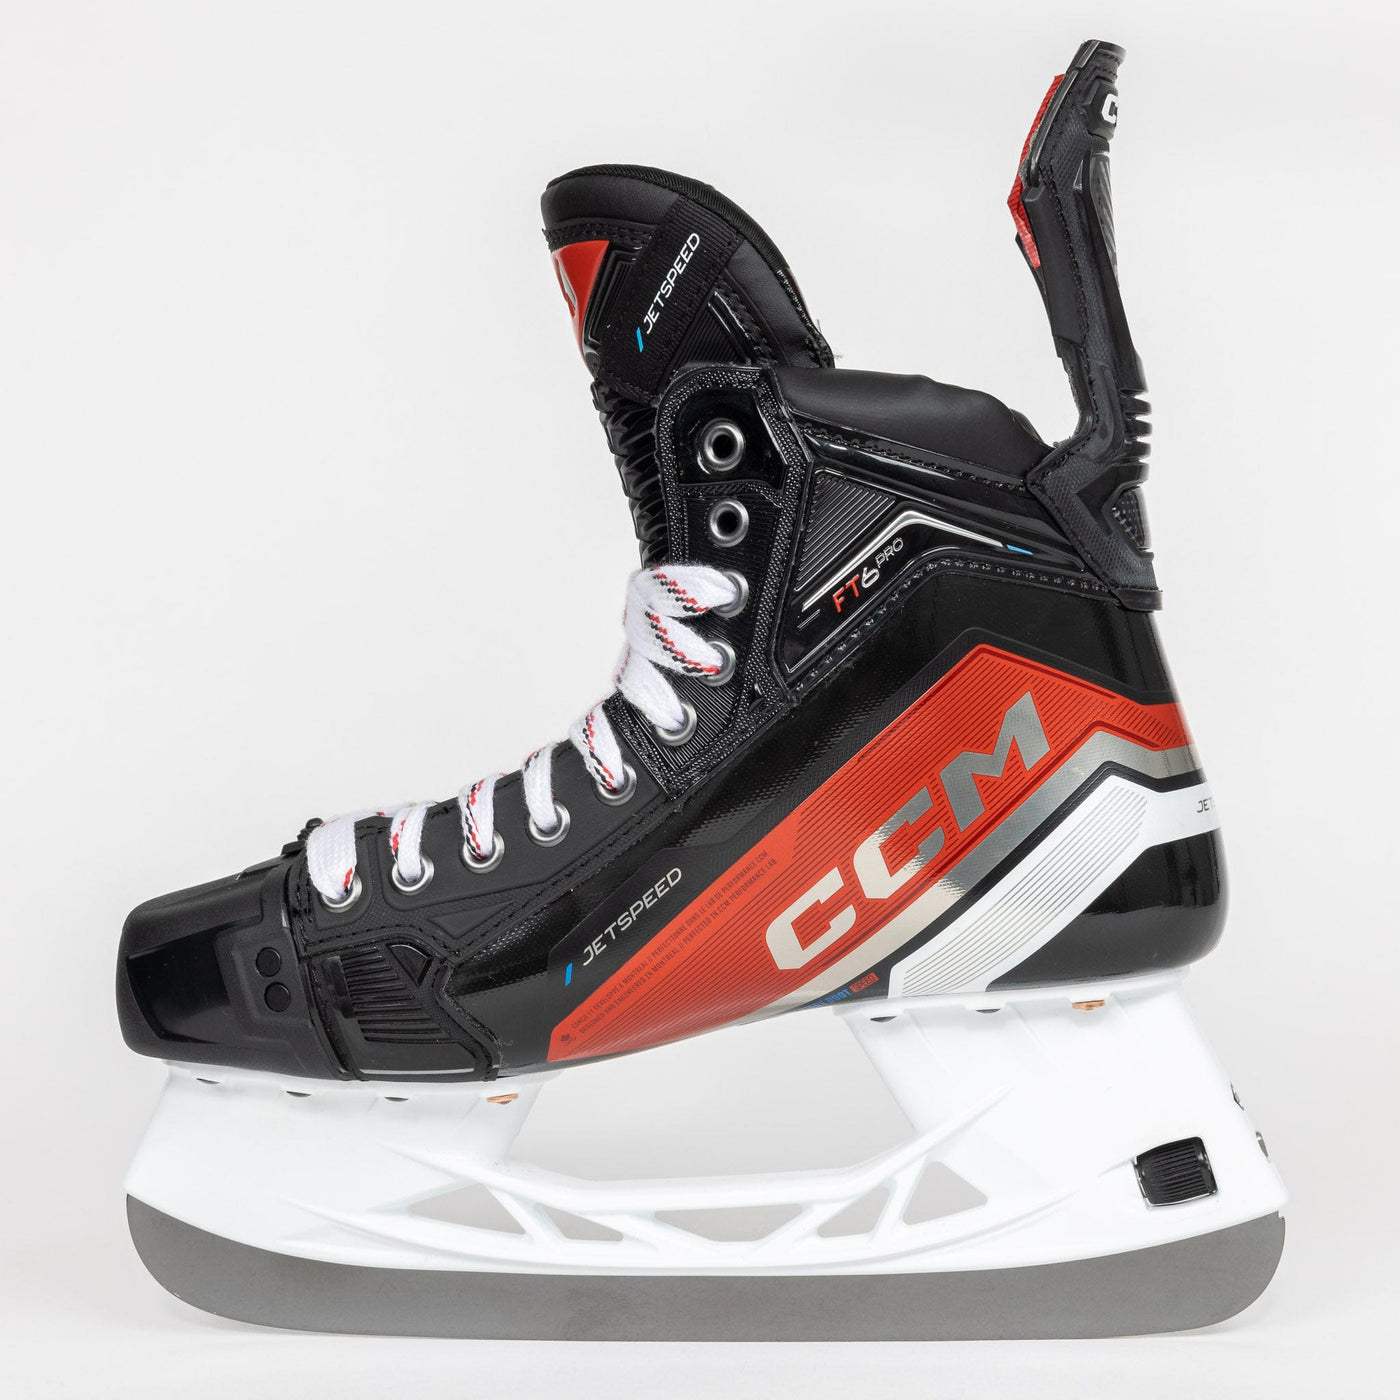 CCM Jetspeed FT6 Ice Hockey Skates - Senior